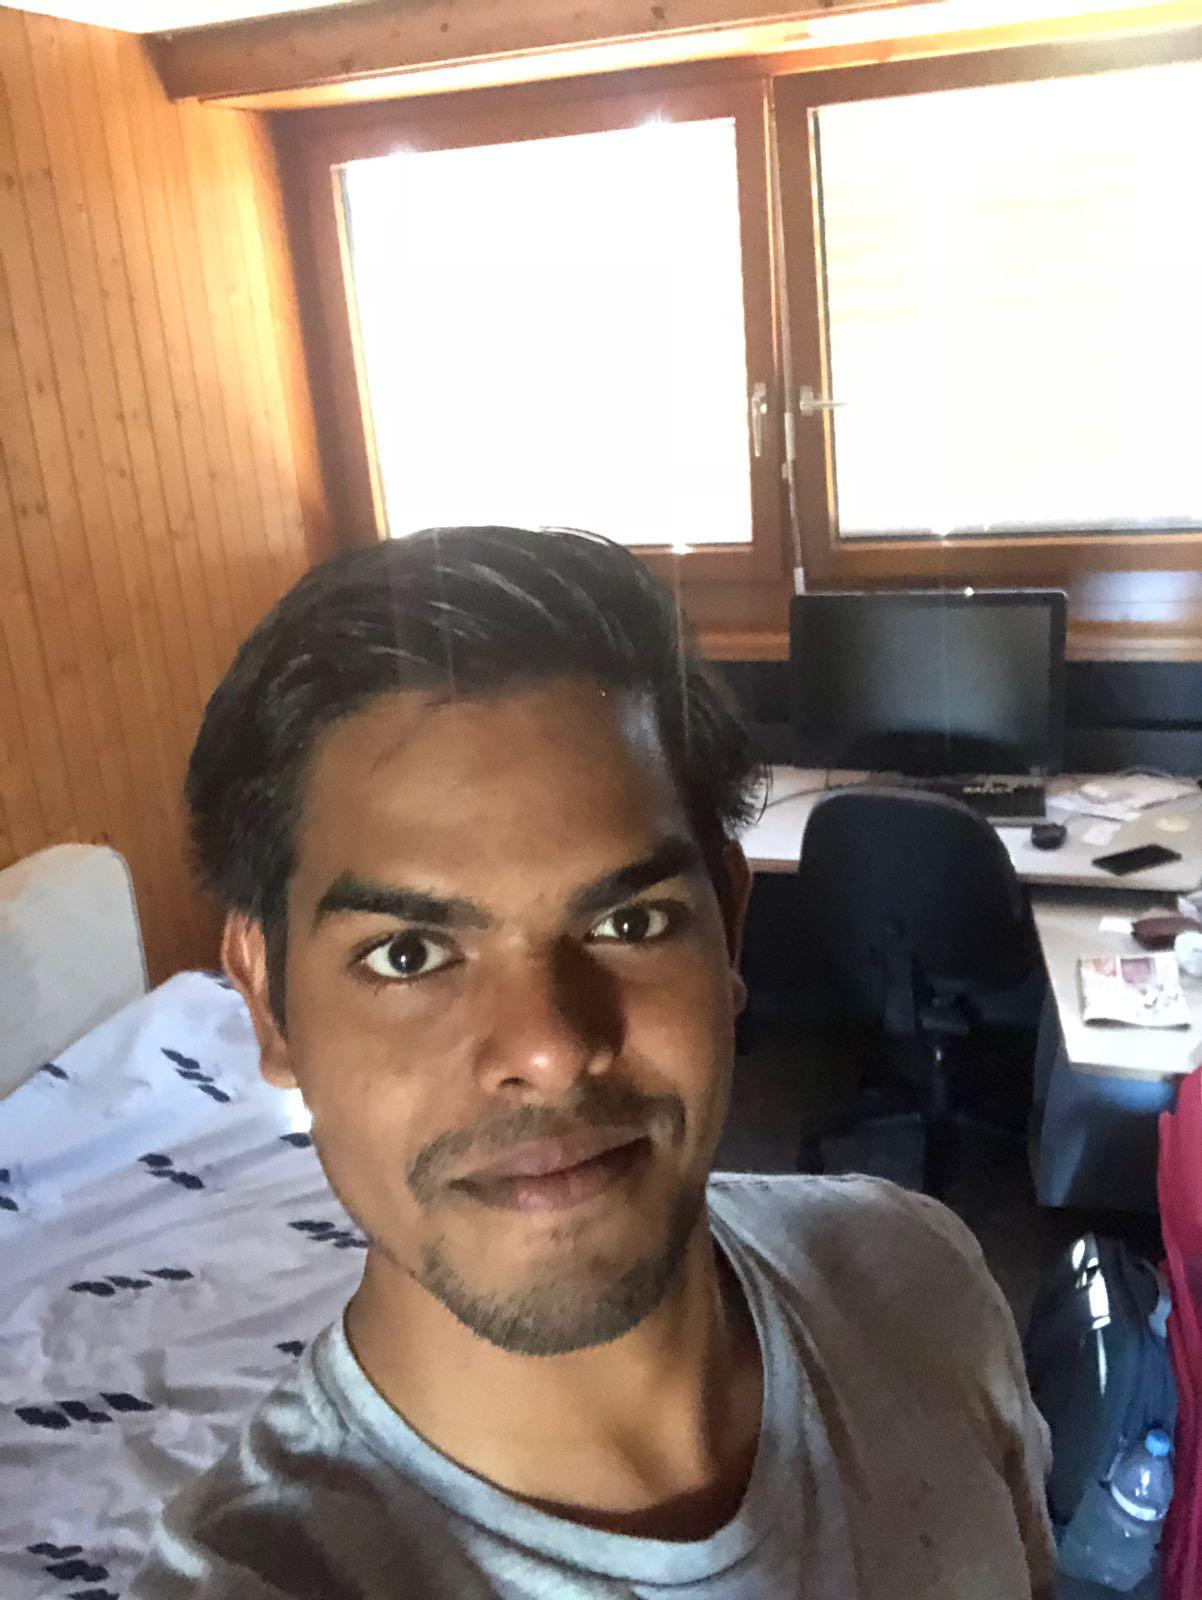 Selfie by Gaurav in his room